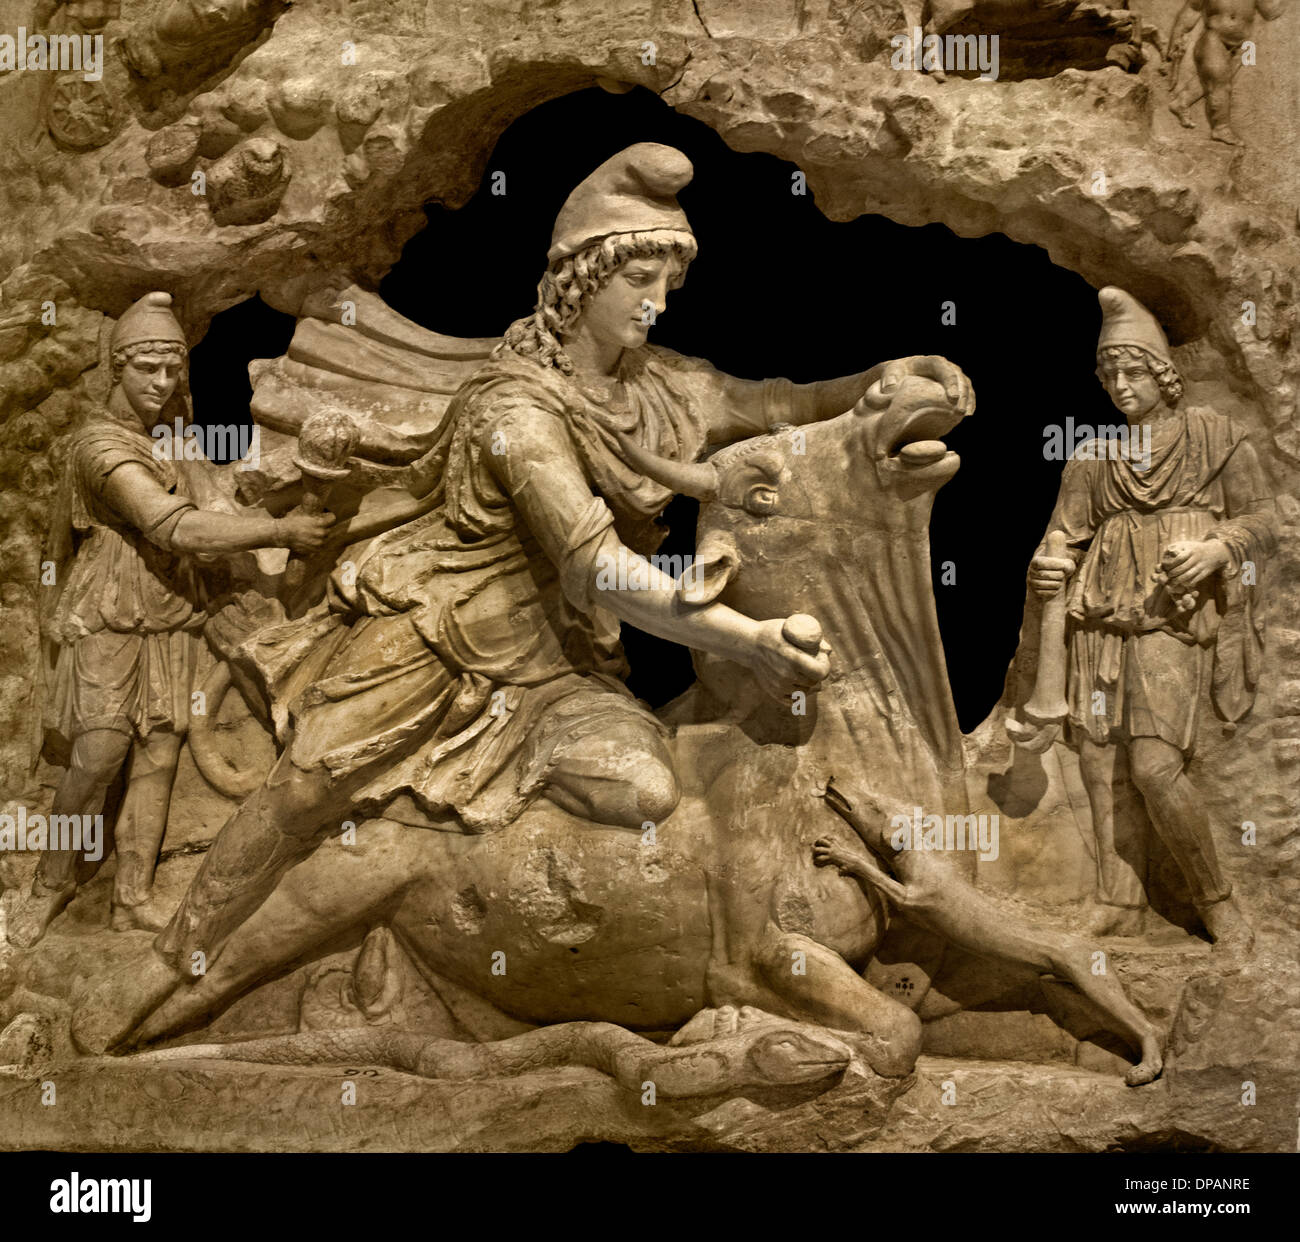 Il sollievo di Mithra iraniano il dio del sole di sacrificare il toro dal Campidoglio romano Roma Italia 100-200 d.c. Foto Stock